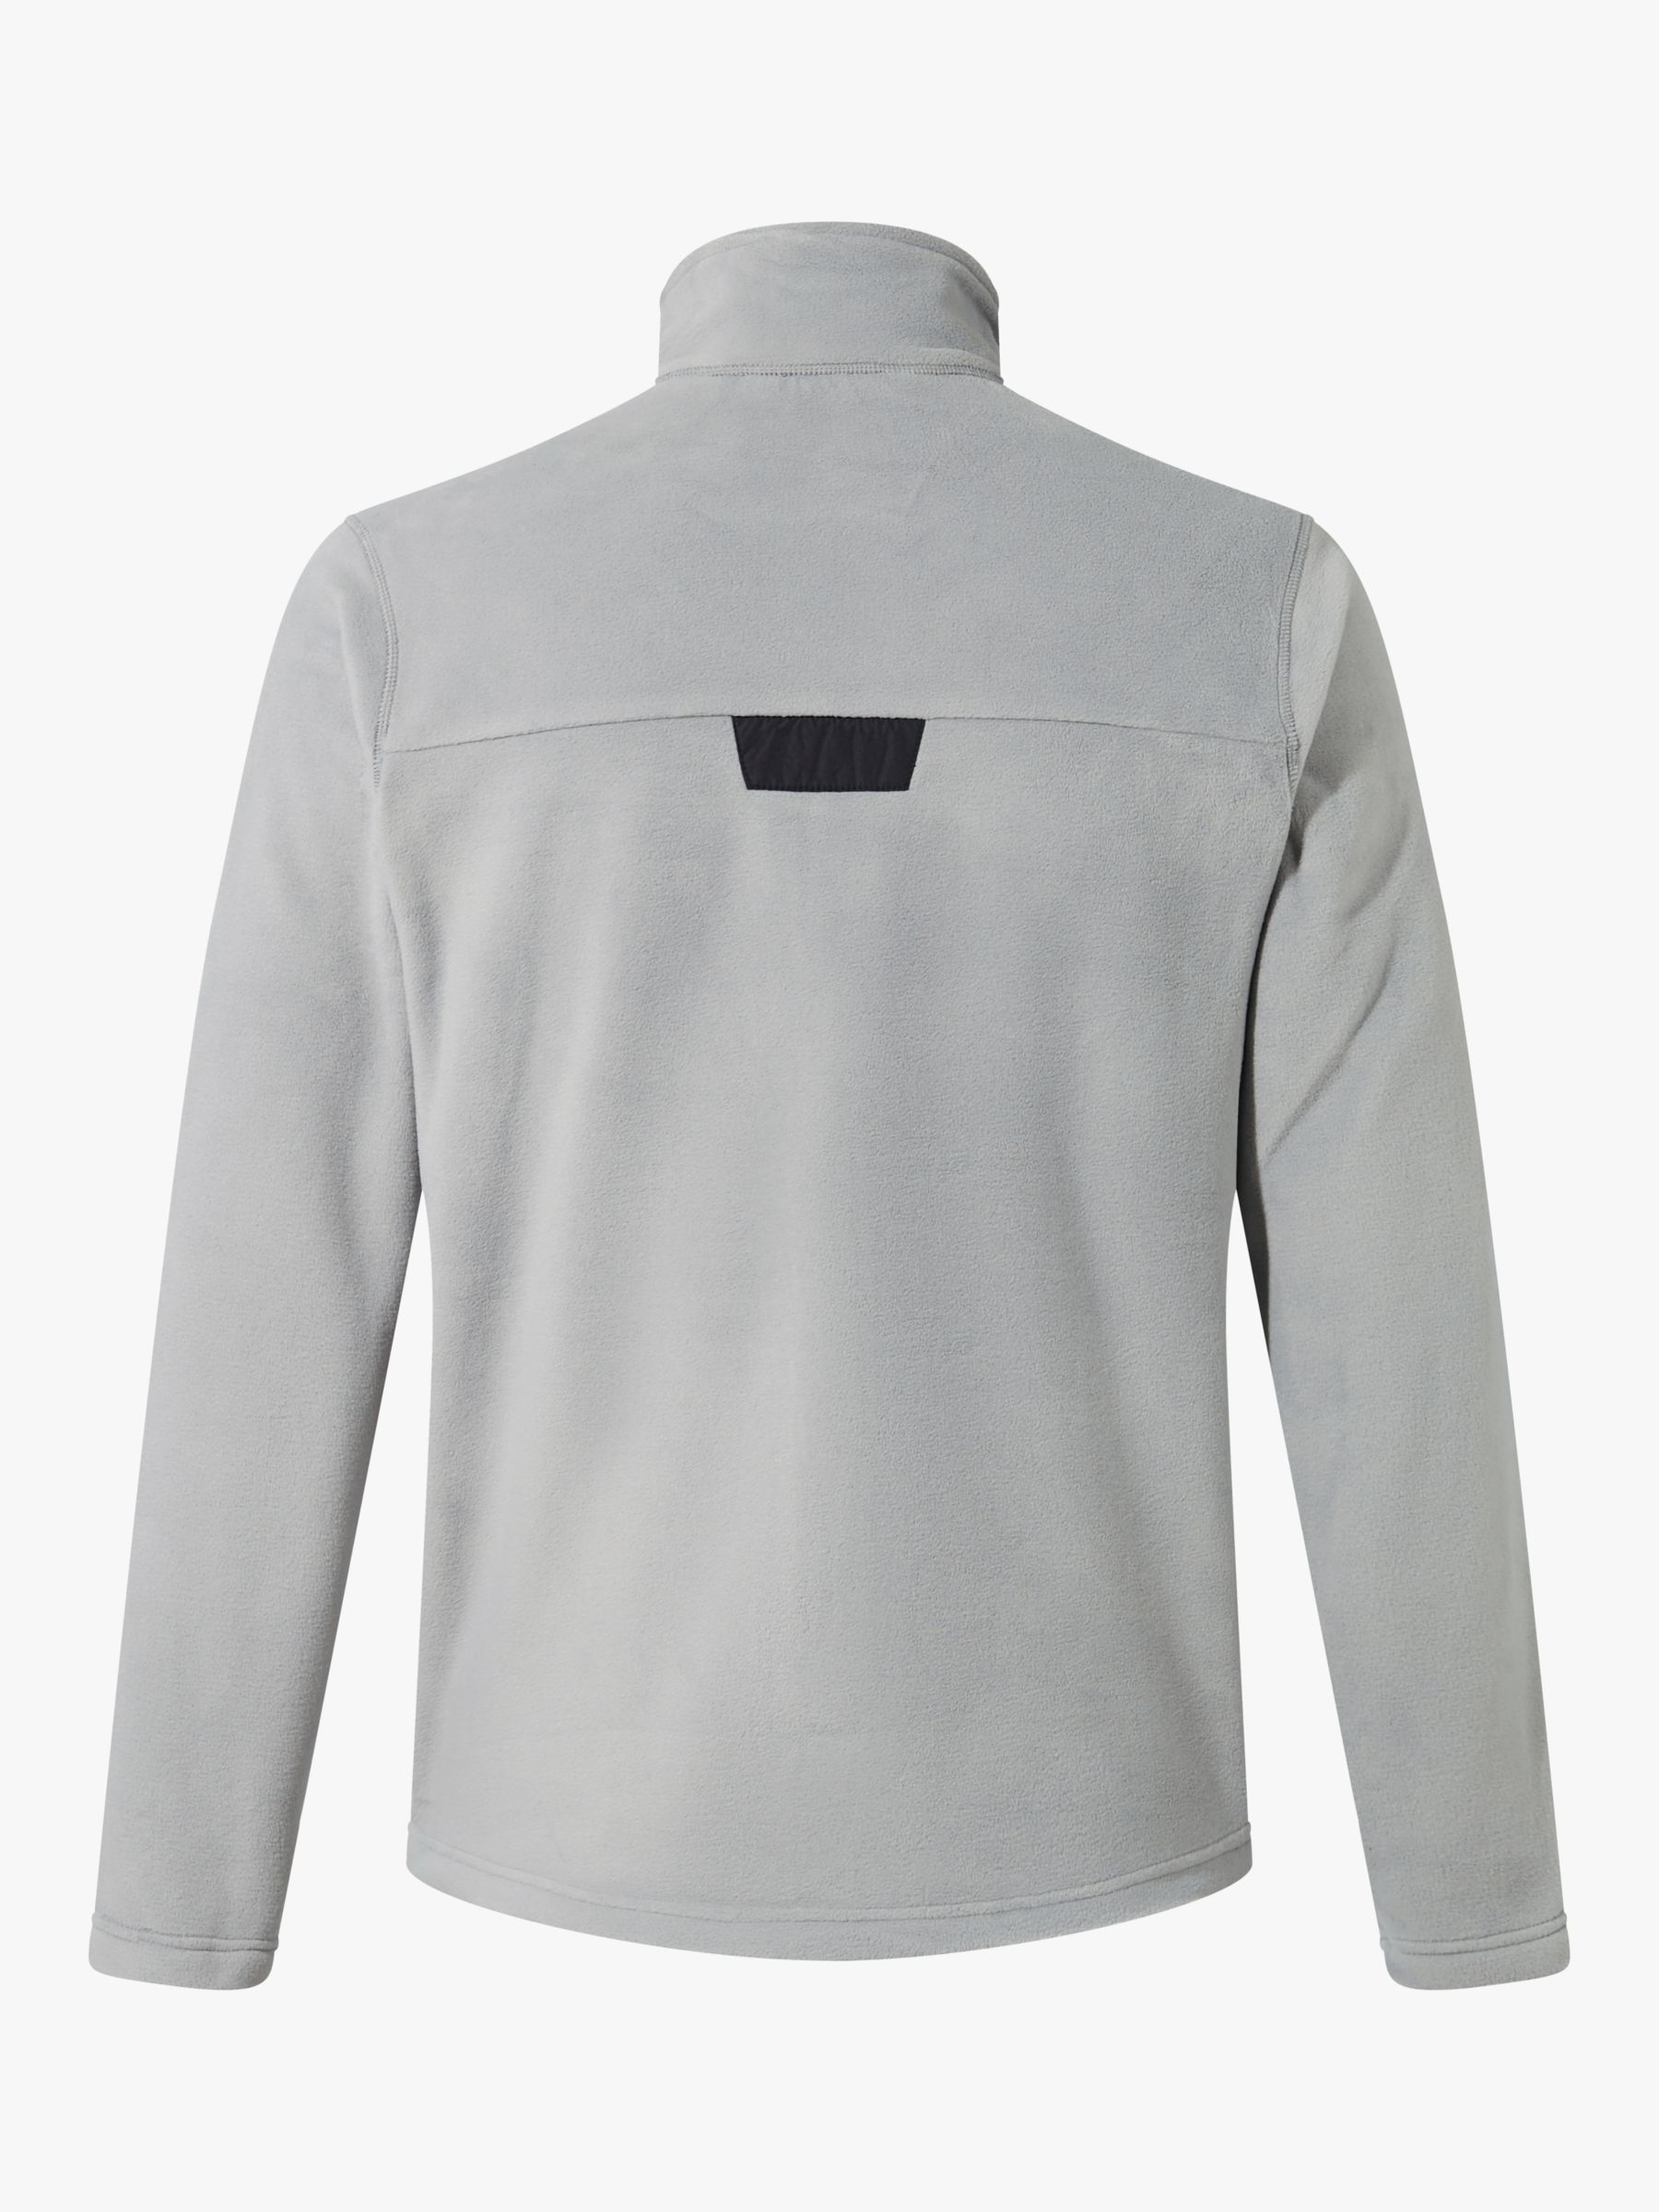 Berghaus Men's Prism Fleece Top, Grey/Black, S